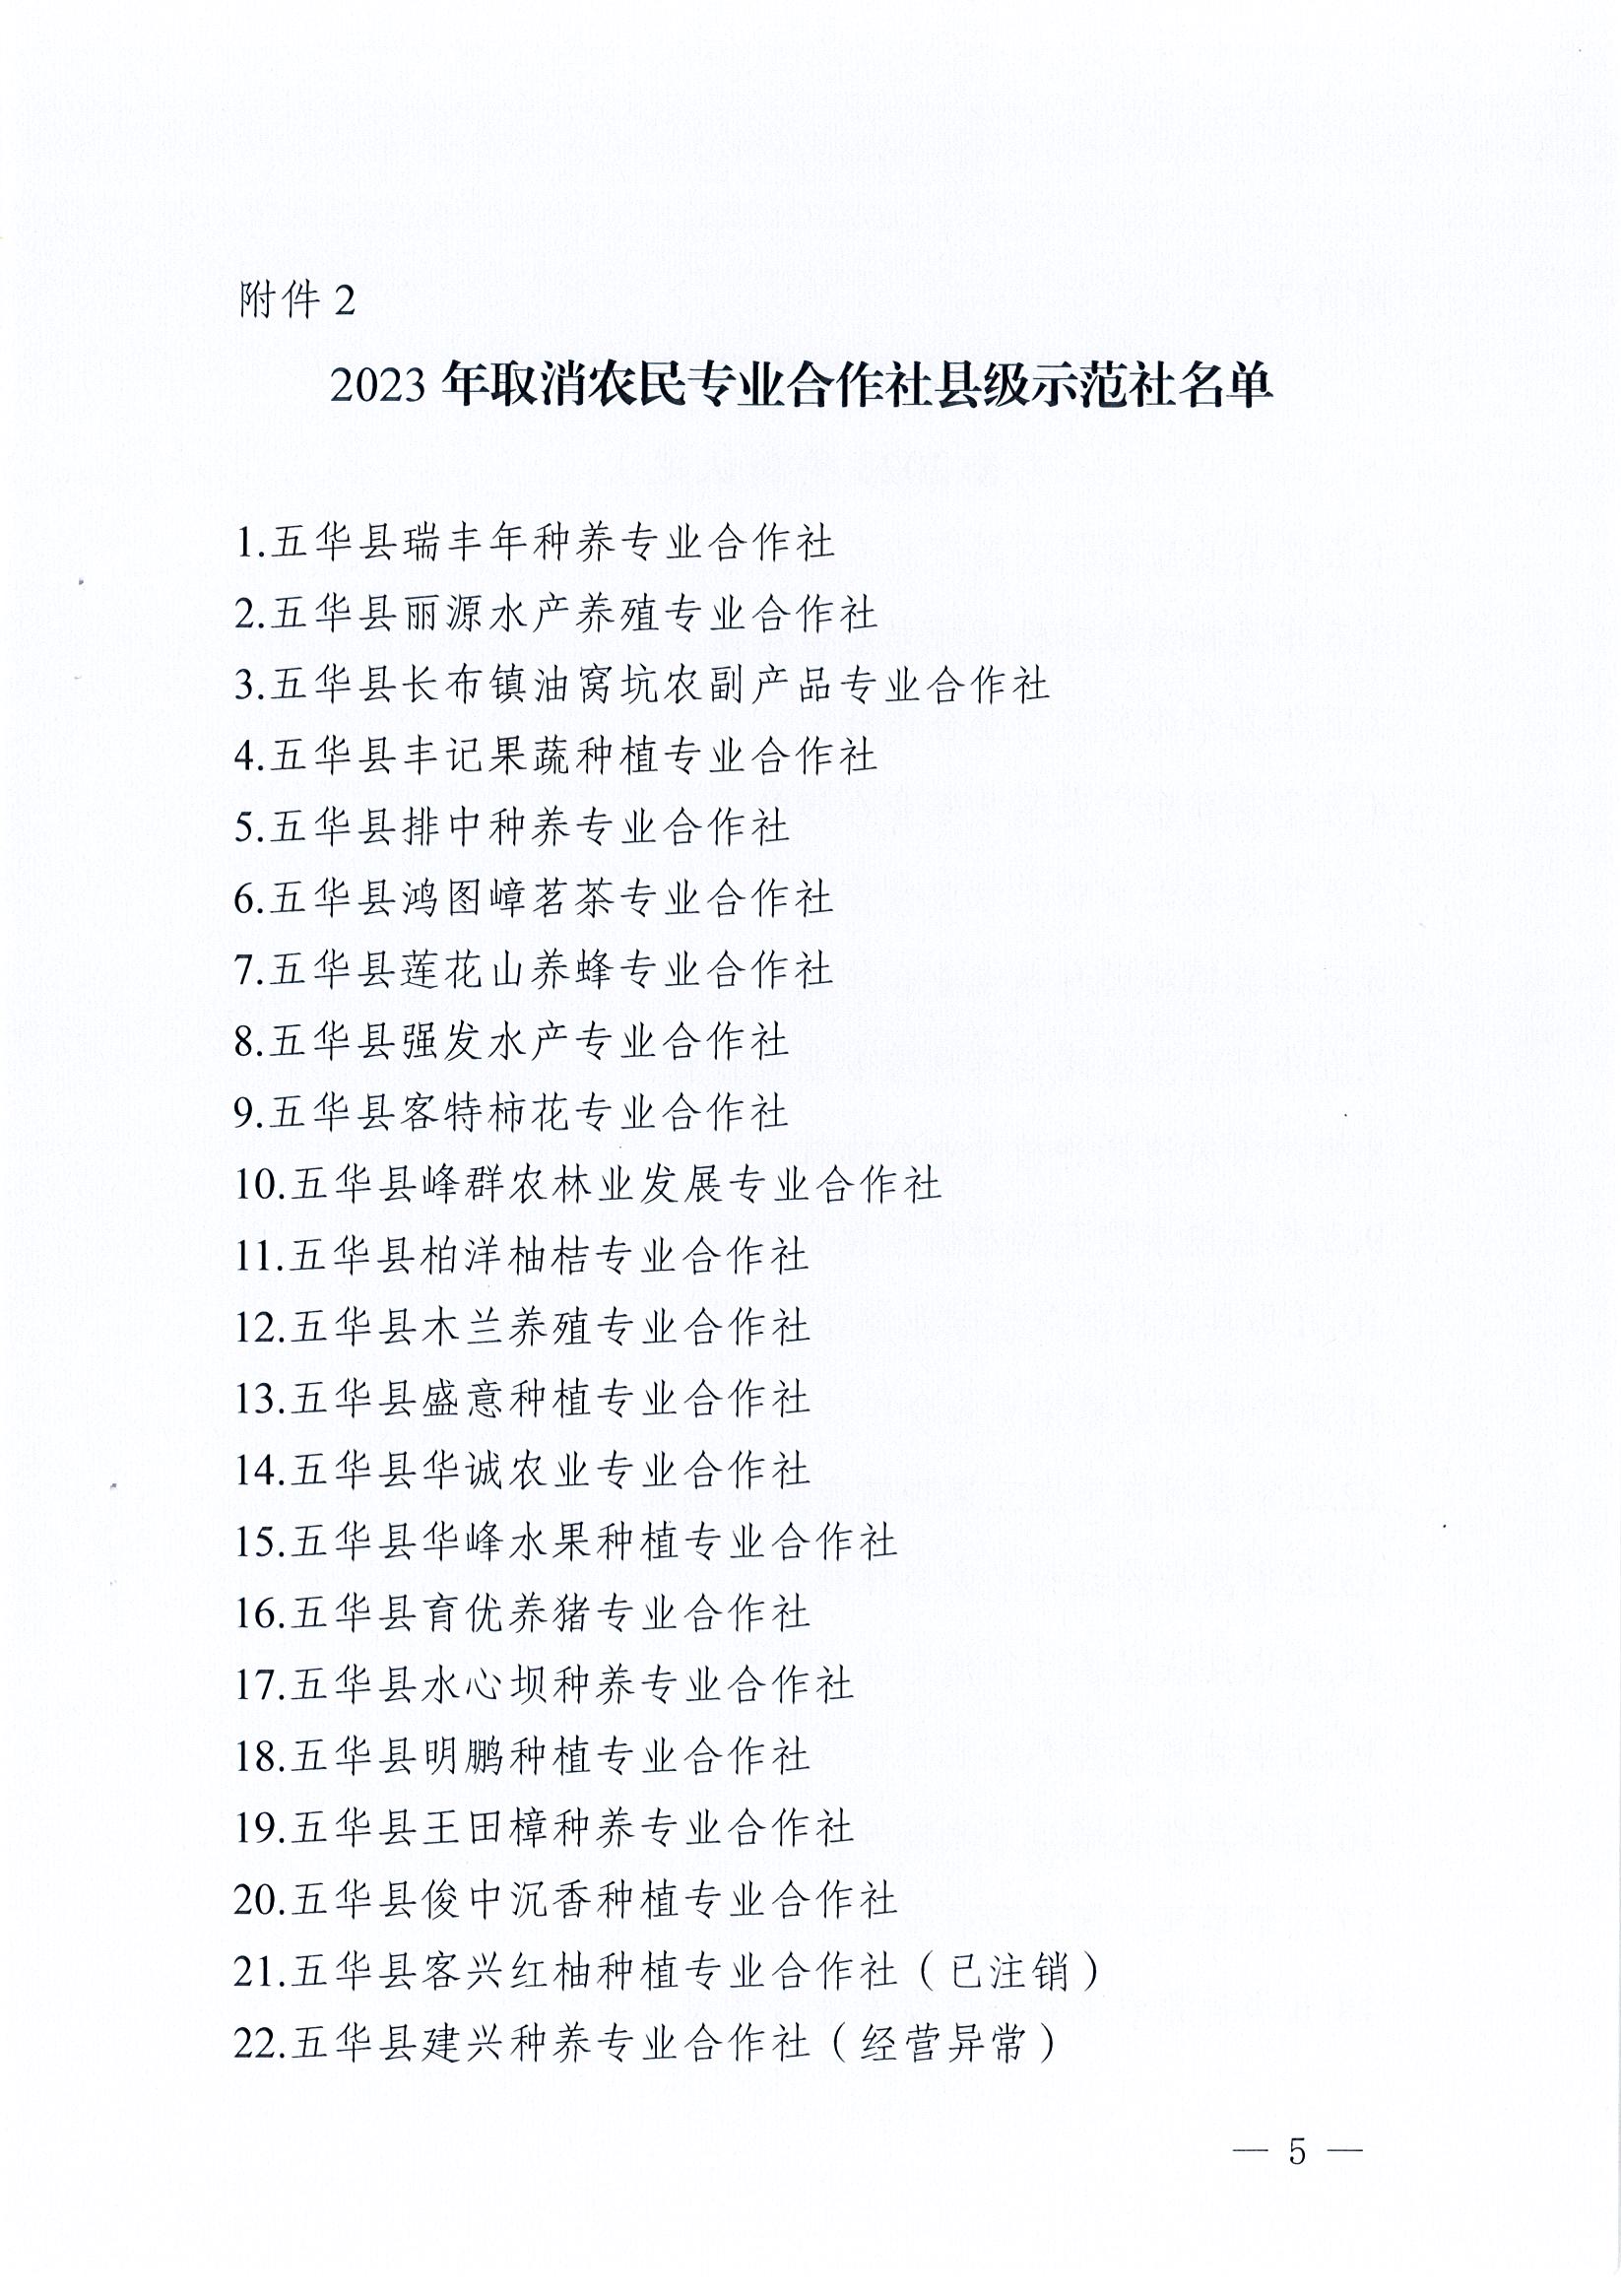 五华县农业农村局等八部门关于公布2023年五华县农民专业合作社县级示范社名录的通知_页面_05.jpg